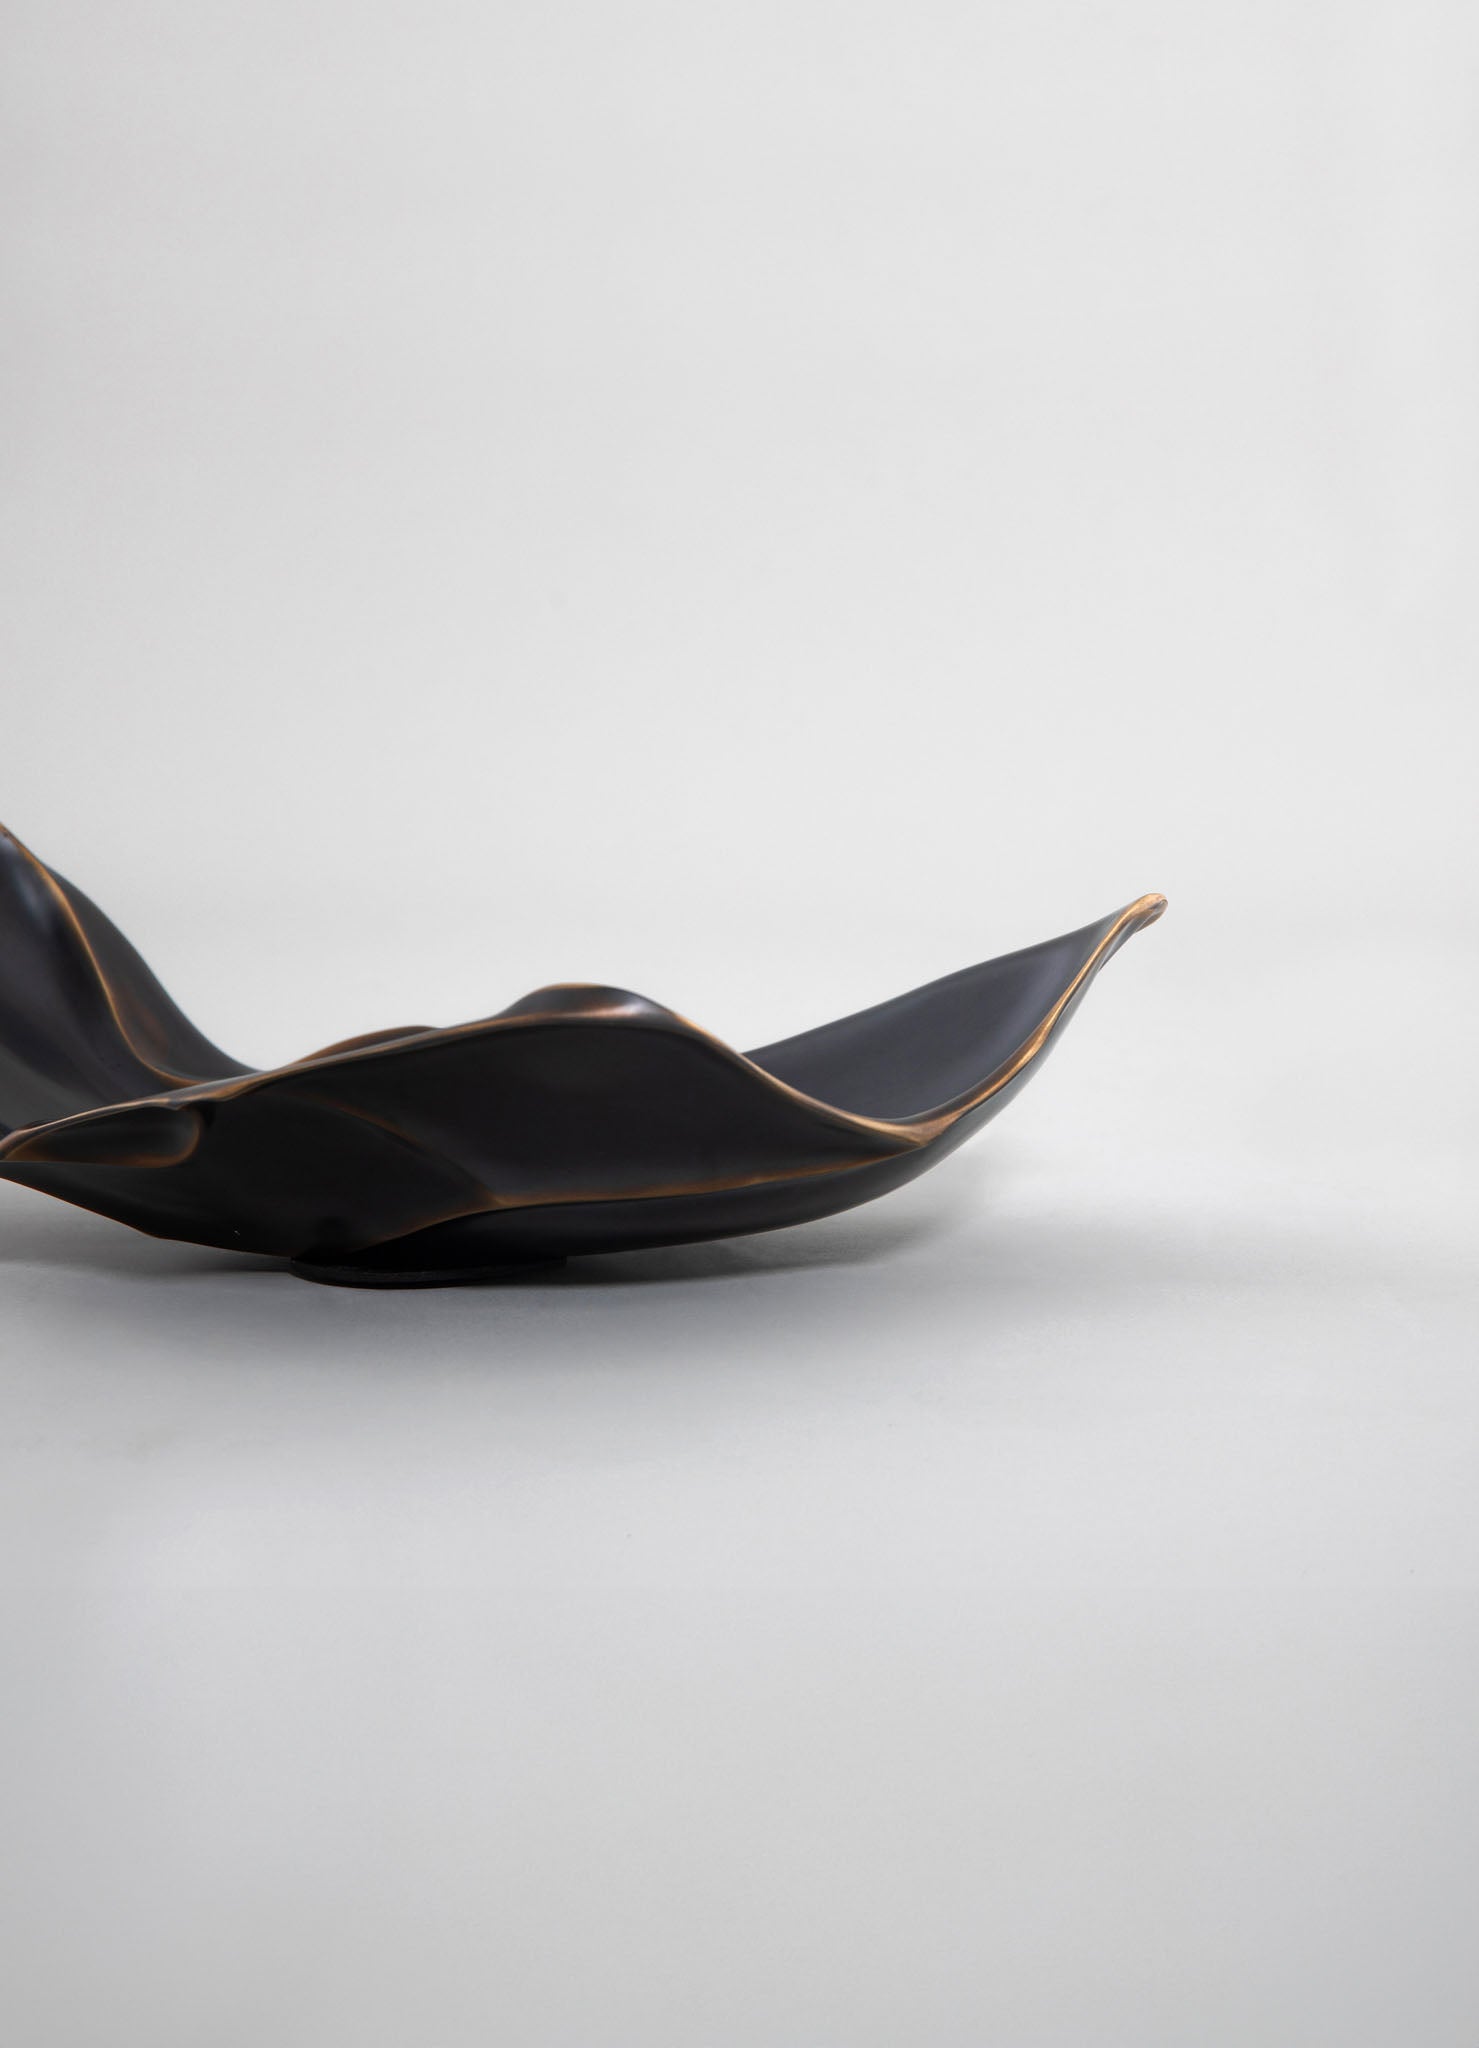 designer handmade brass bowl